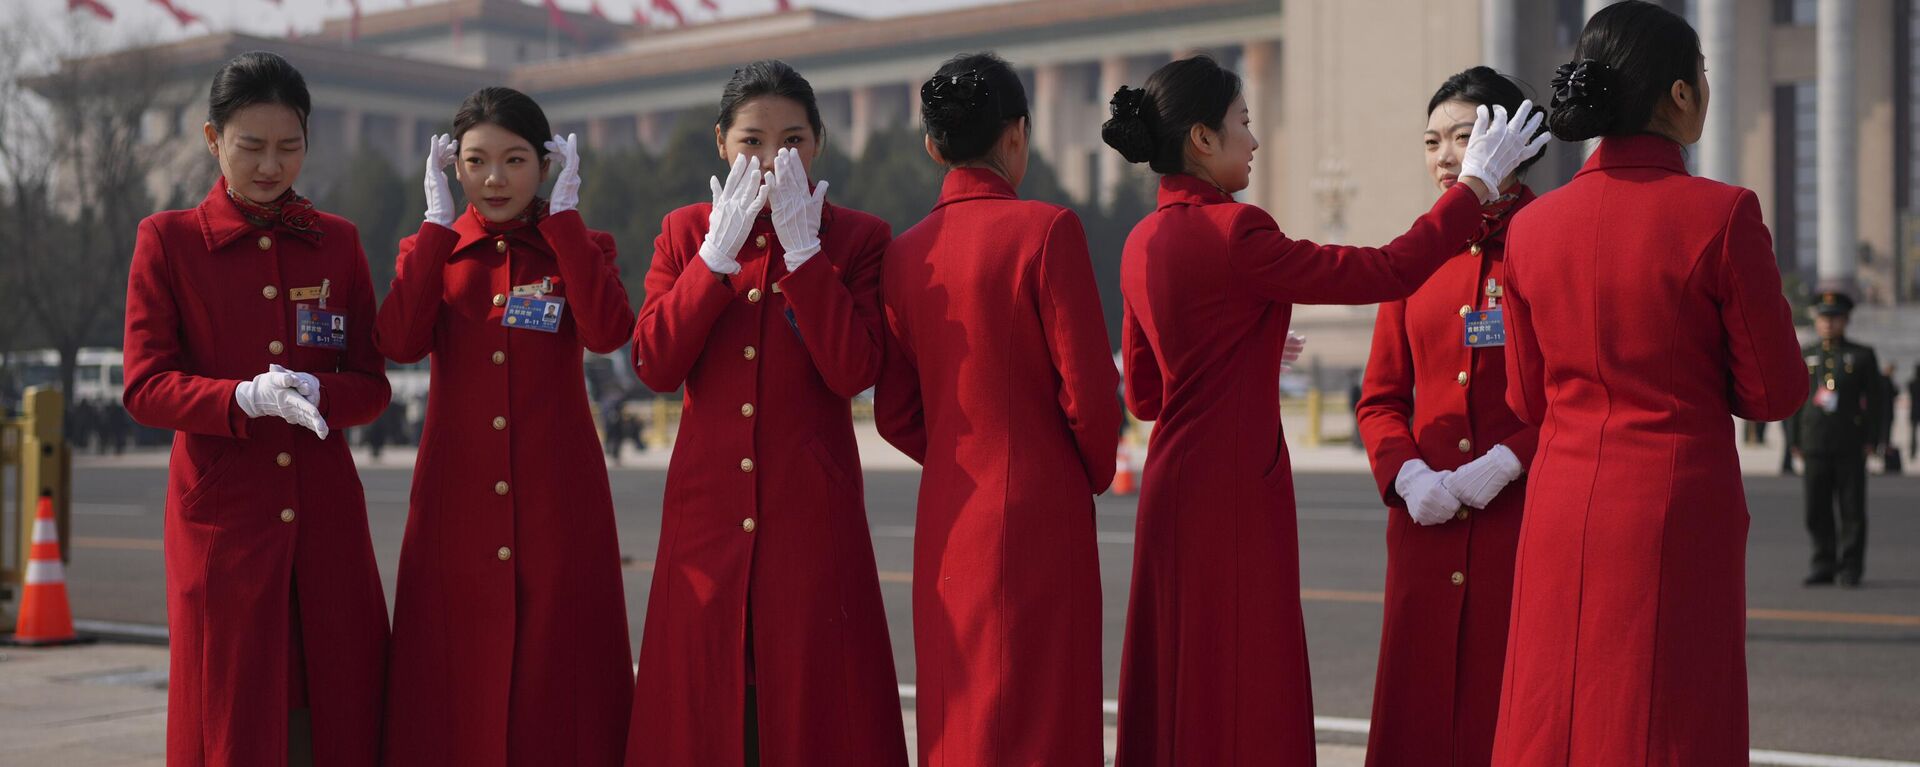 Các cô gái hộ tống tạo dáng trước khi khai mạc phiên họp đầu tiên của Ủy ban Toàn quốc Hội đồng Hiệp thương Chính trị Nhân dân Trung Quốc tại Đại lễ đường Nhân dân Bắc Kinh. - Sputnik Việt Nam, 1920, 06.03.2023